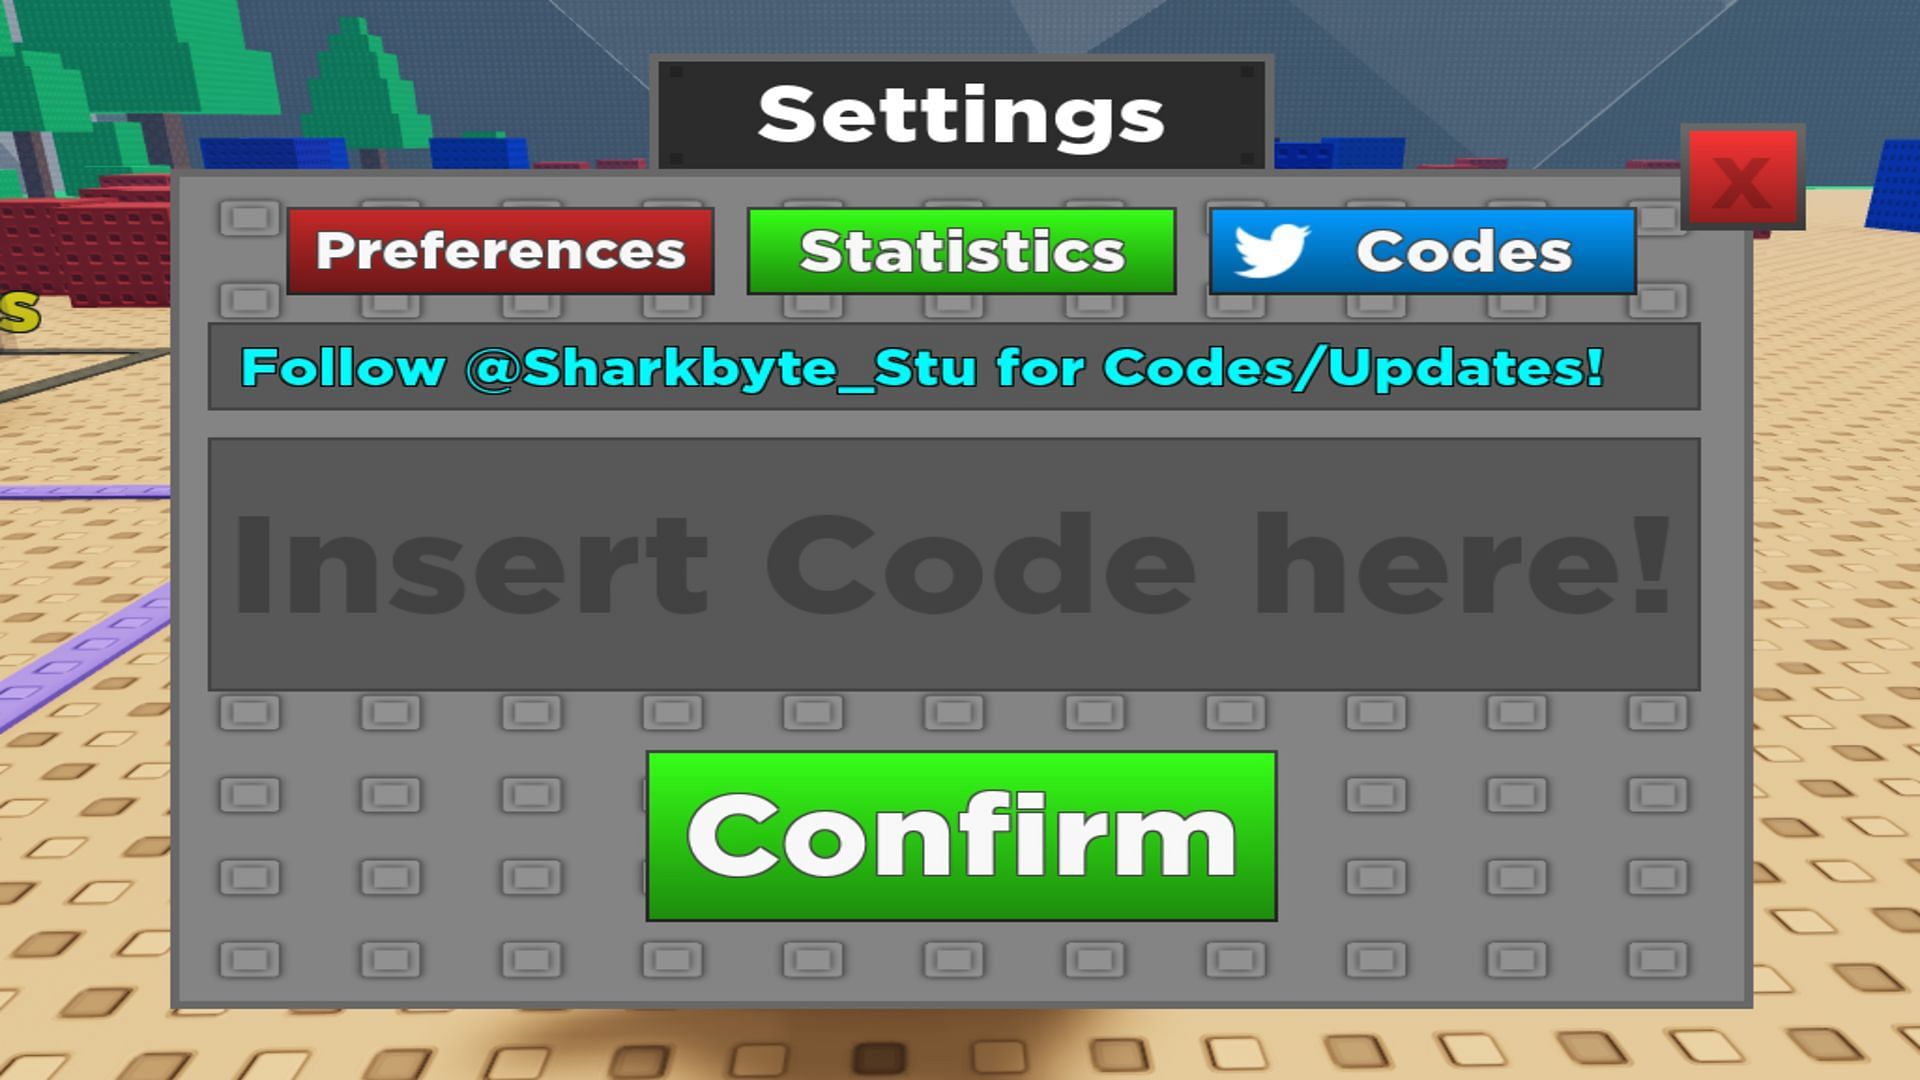 Redeeming codes is done via settings (Image via Roblox)